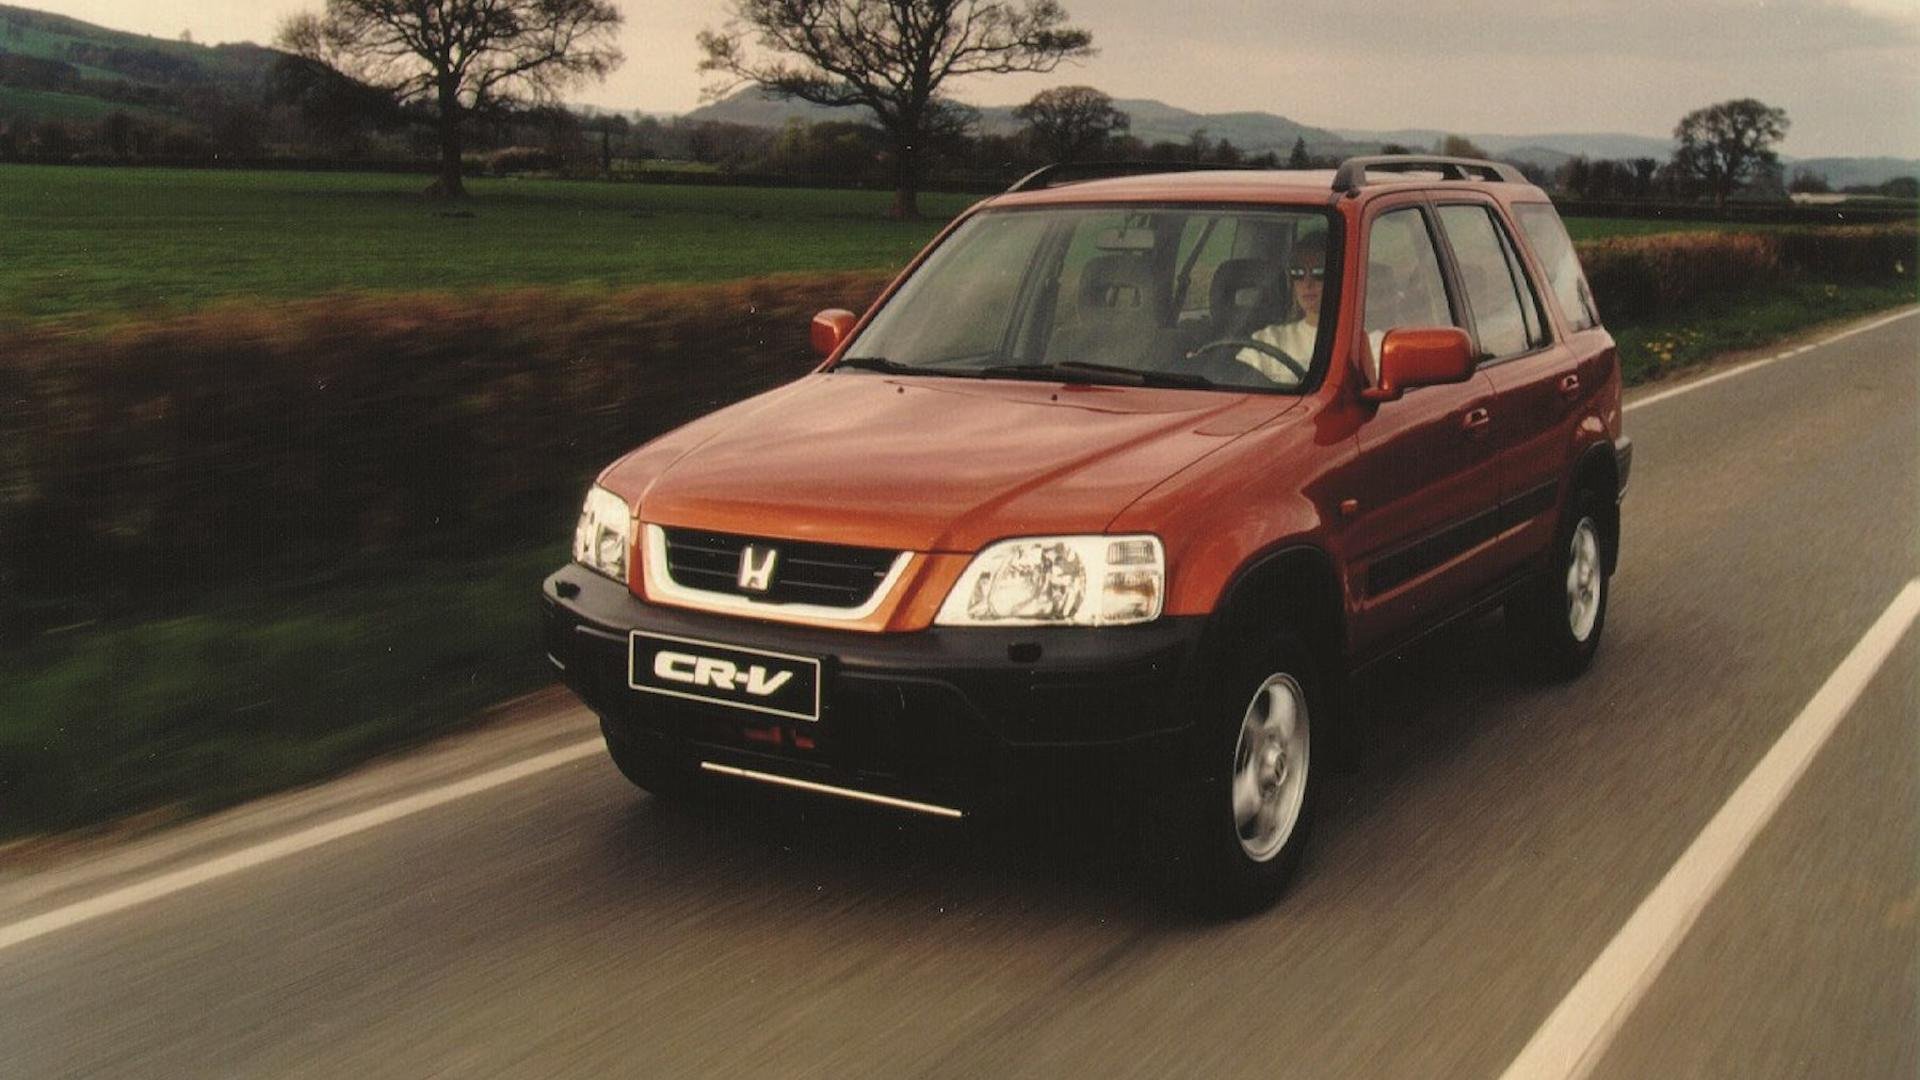 Honda cr v rd 1. Honda CR-V 1995. Honda CRV 1995. Хонда СРВ 1 поколения. Хонда CRV Rd 1 поколение.